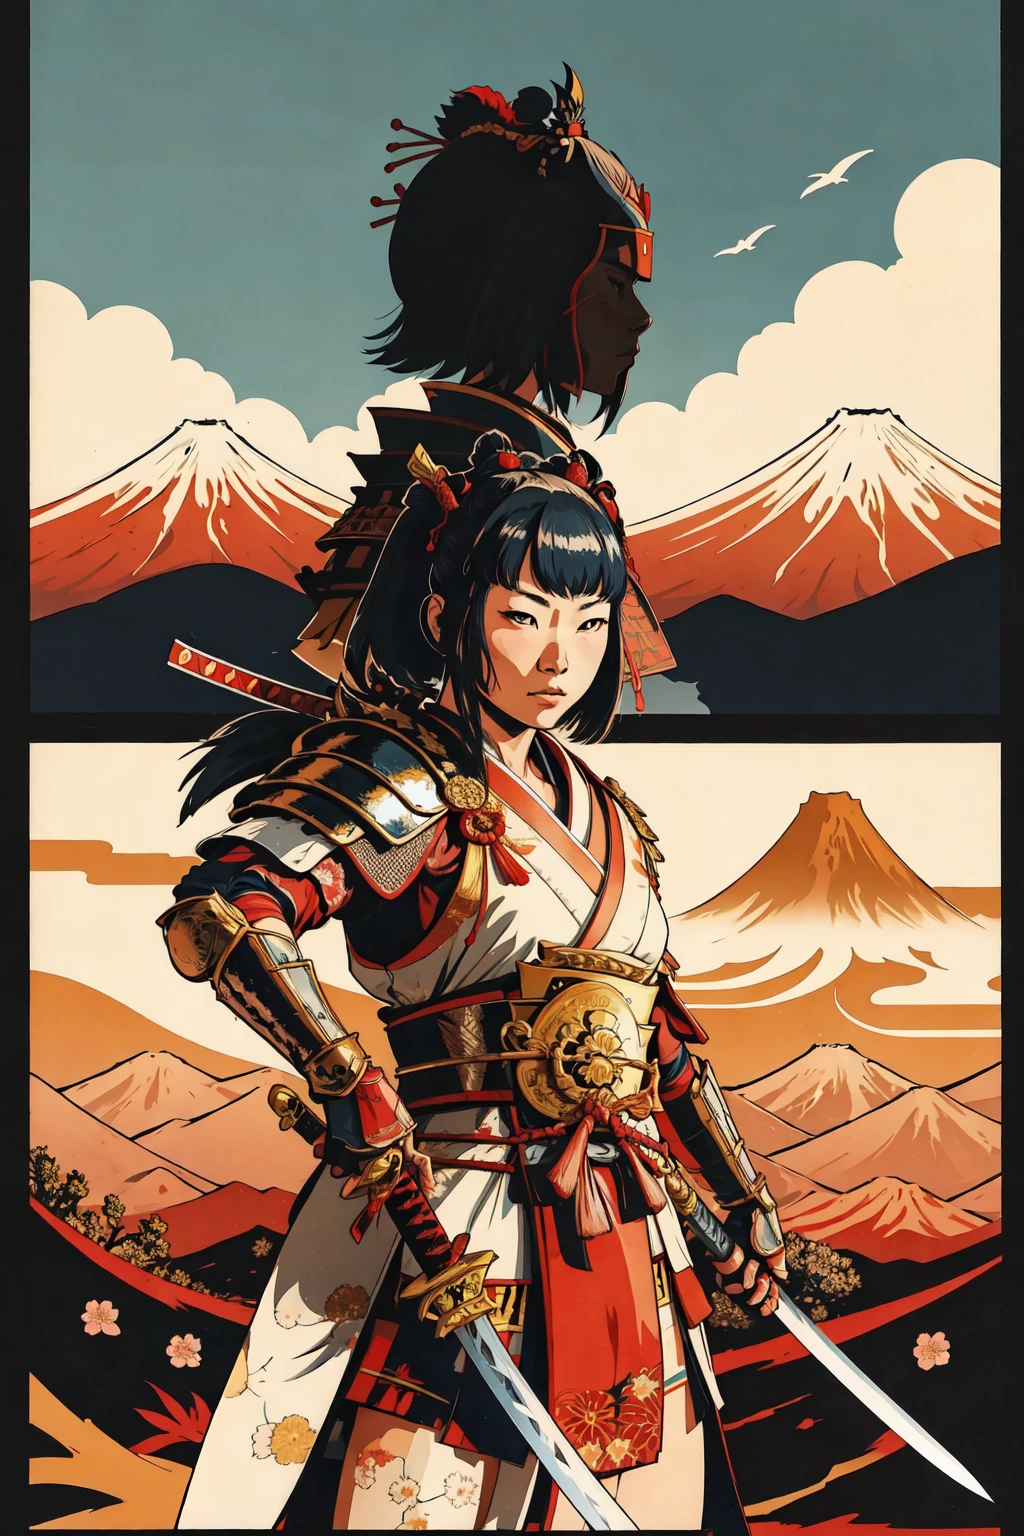 1 名女孩, 和服,   日本武士铠甲,     日本传统风格 ,(武士刀, 居合斩击姿势) ,过肩视角,  富士山, 太阳
, 负空间,       简化,  花的
(漫画风格), (彩色线条艺术)   